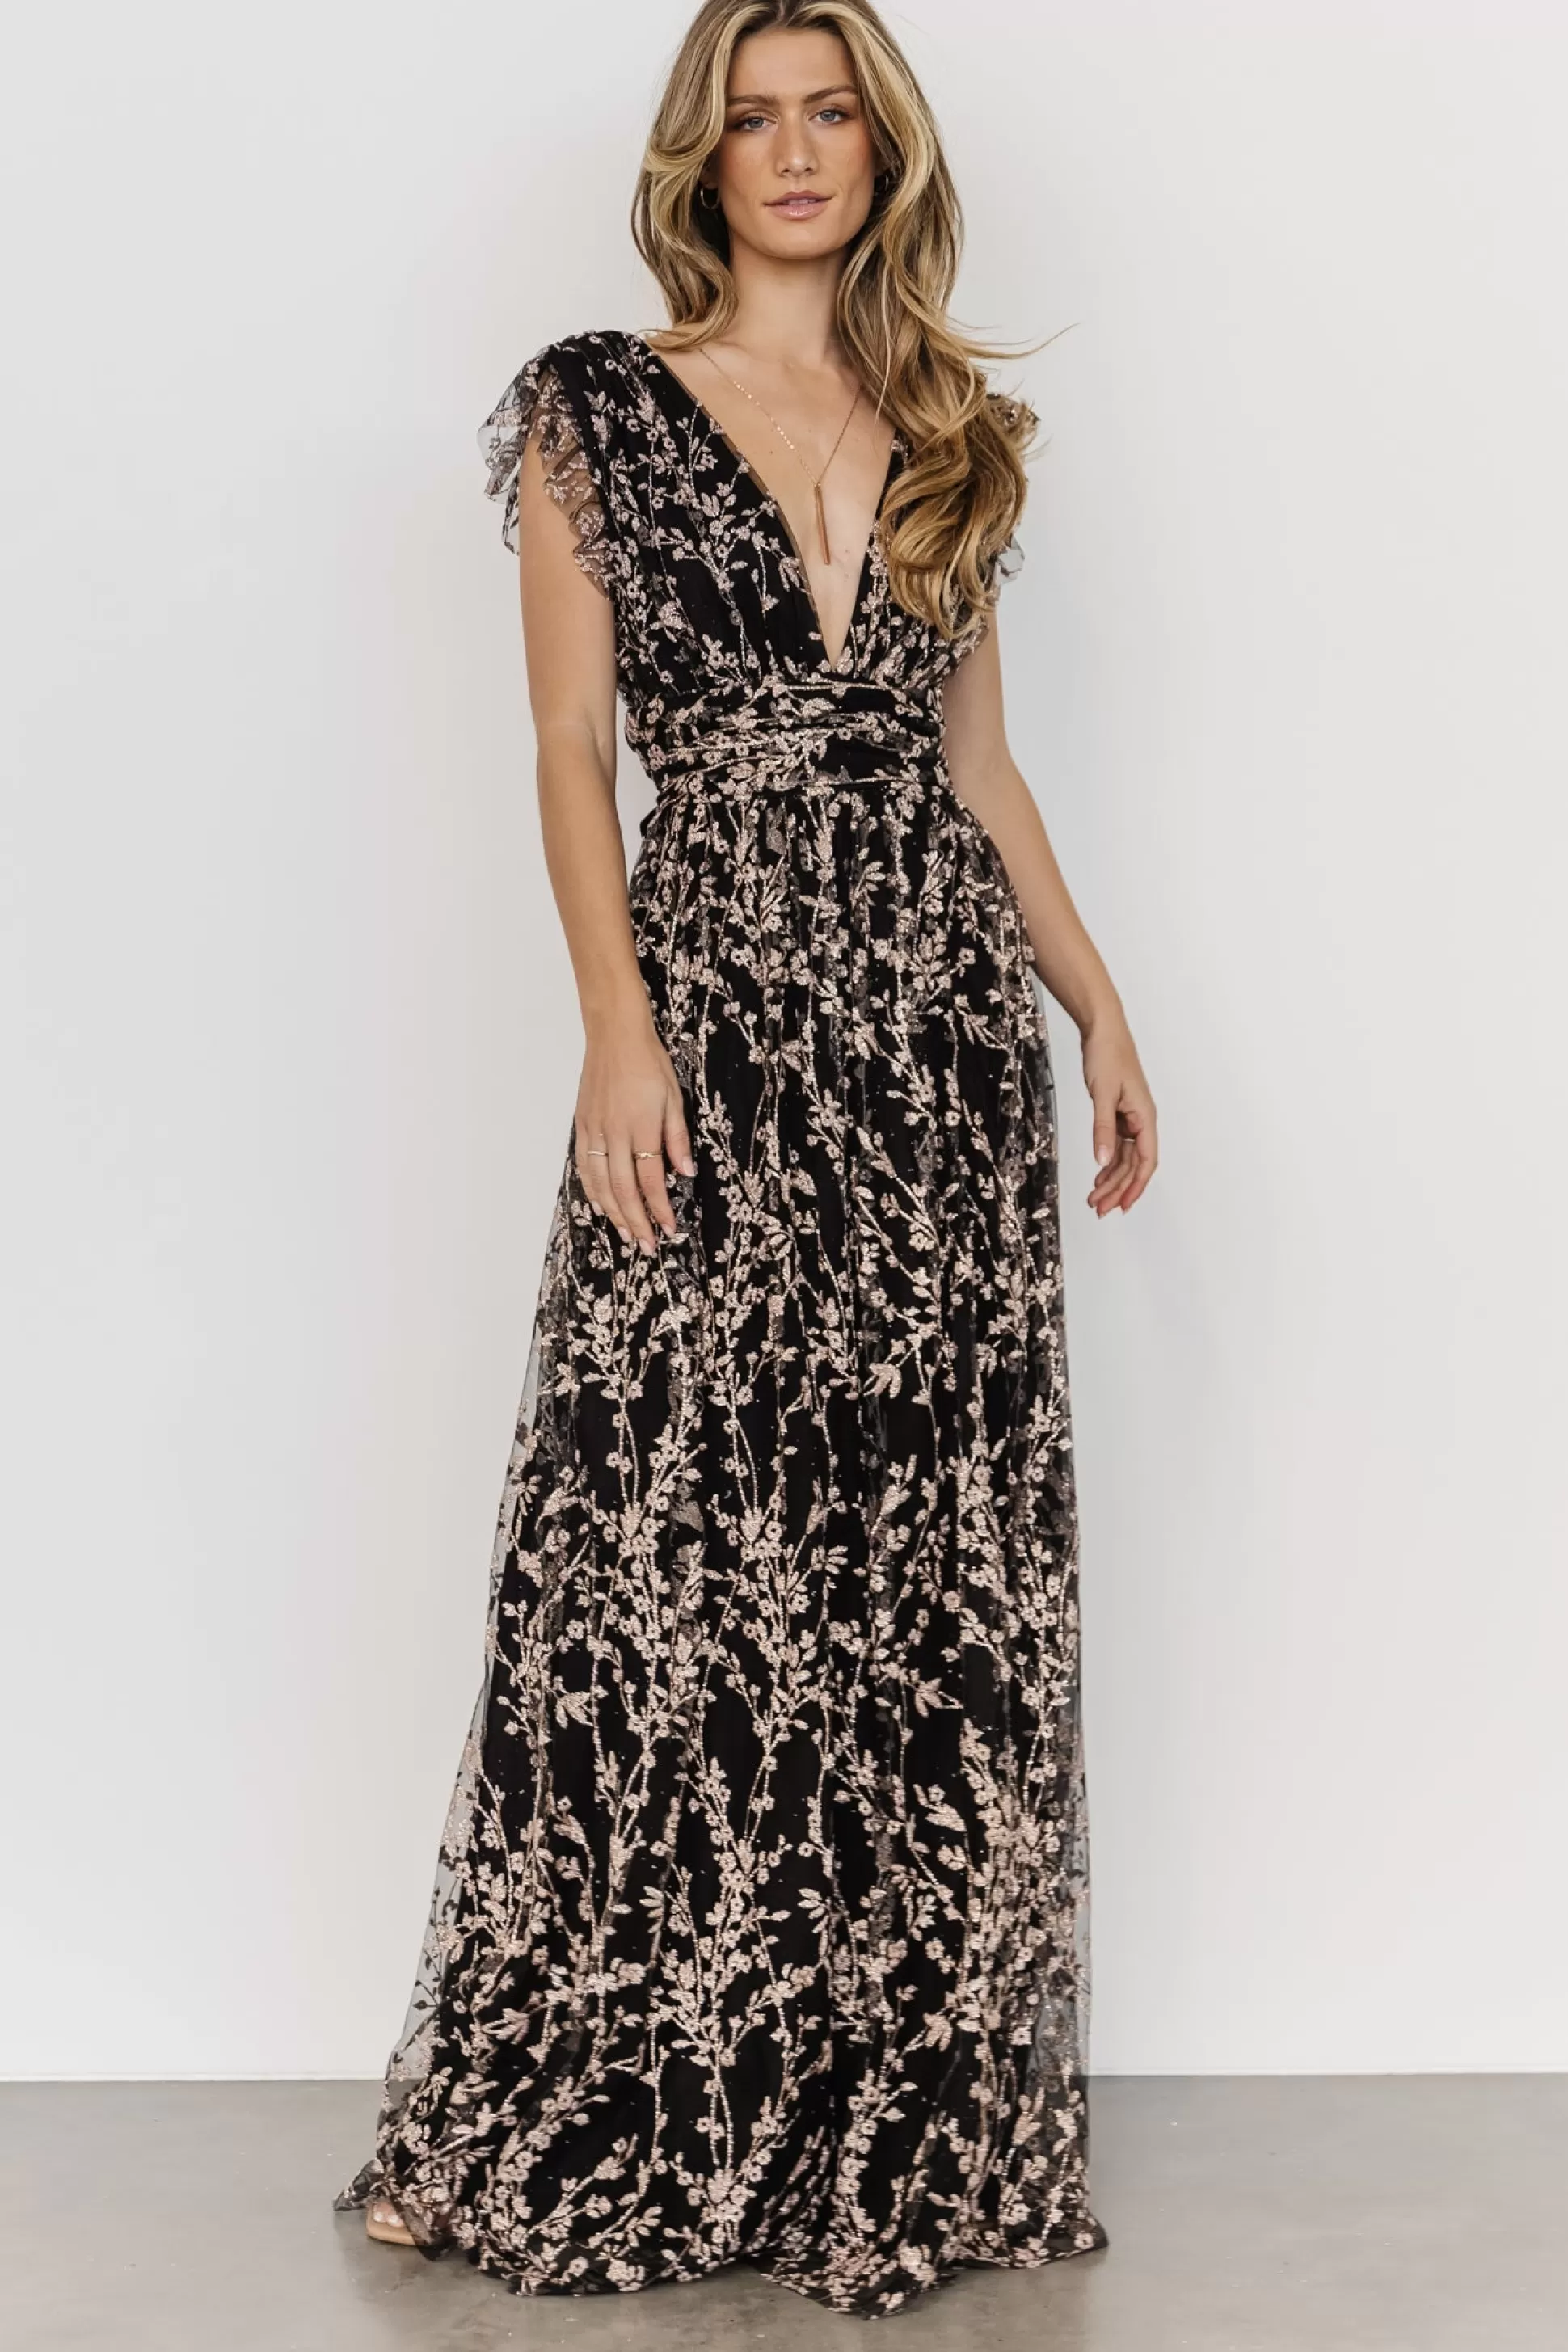 embellished + sequined | Baltic Born Arlene Shimmer Gown | Black + Rose Gold